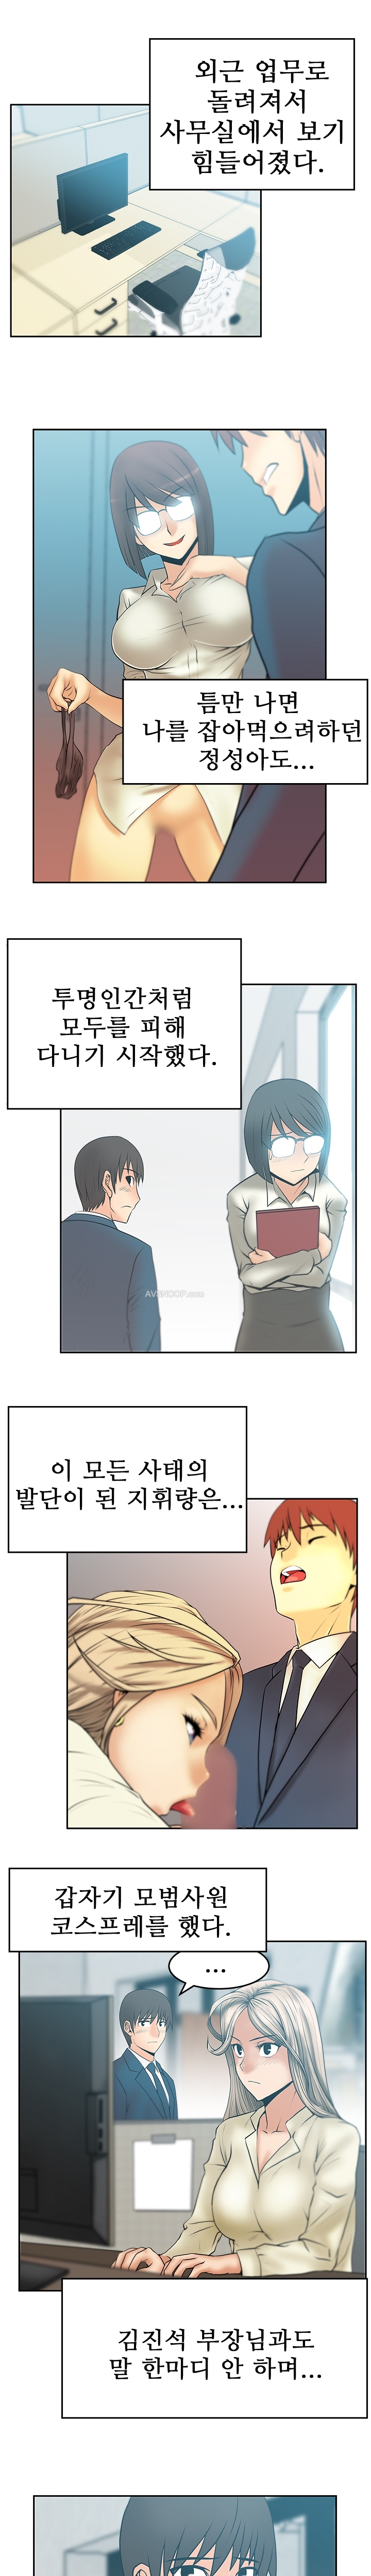 [Minu Mindu] Office Lady Vol. 1 [Korean] 370